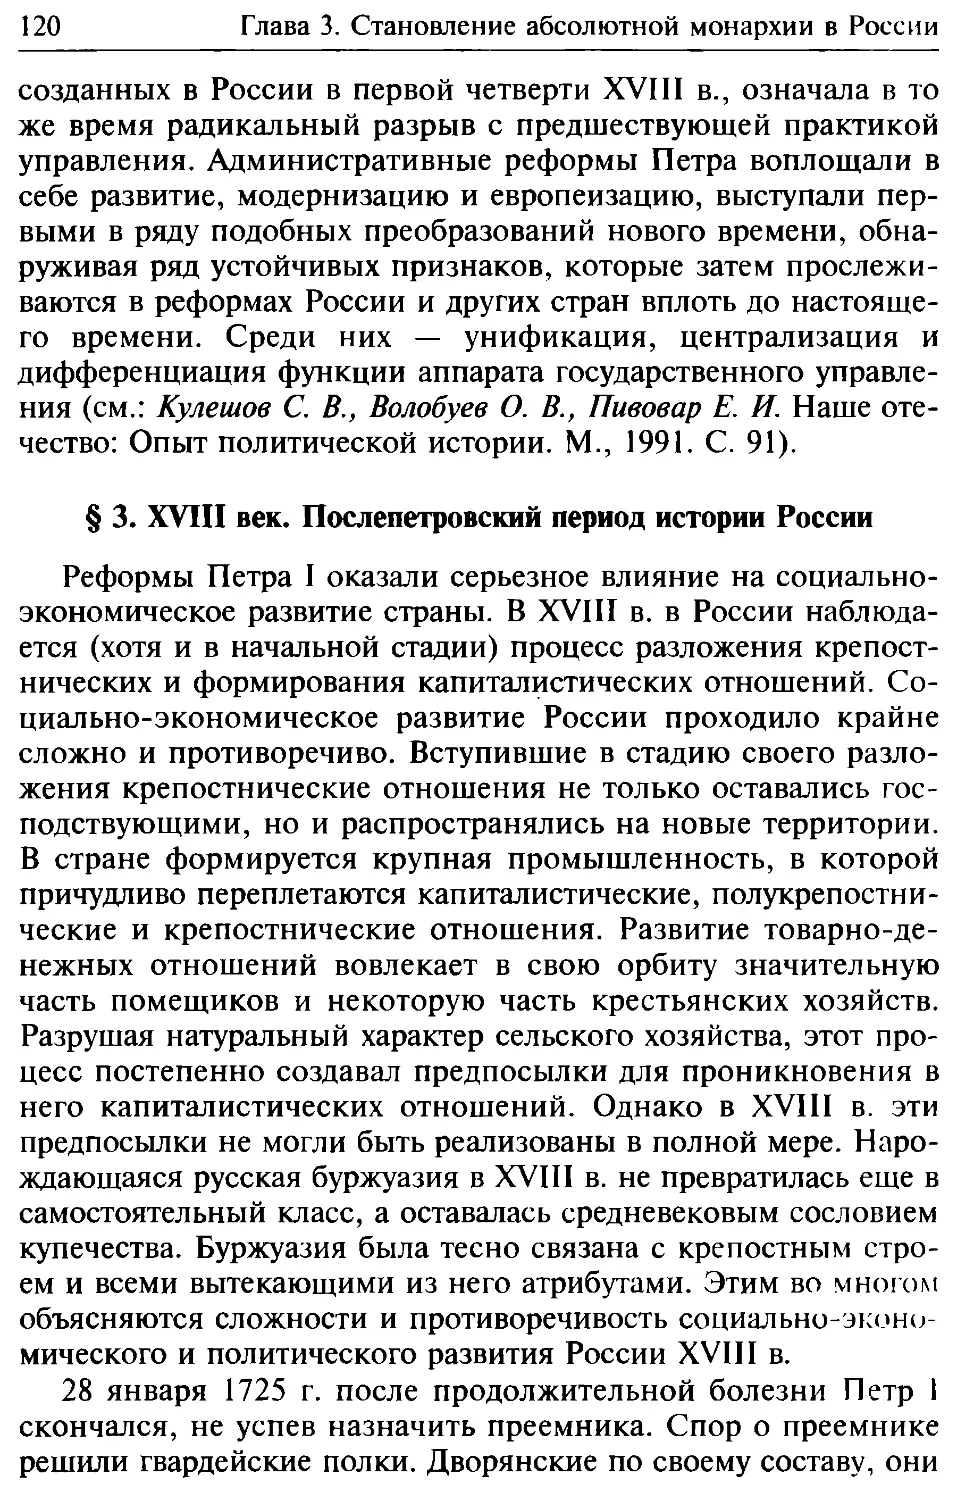 § 3. XVIII век. Послепетровский период истории России